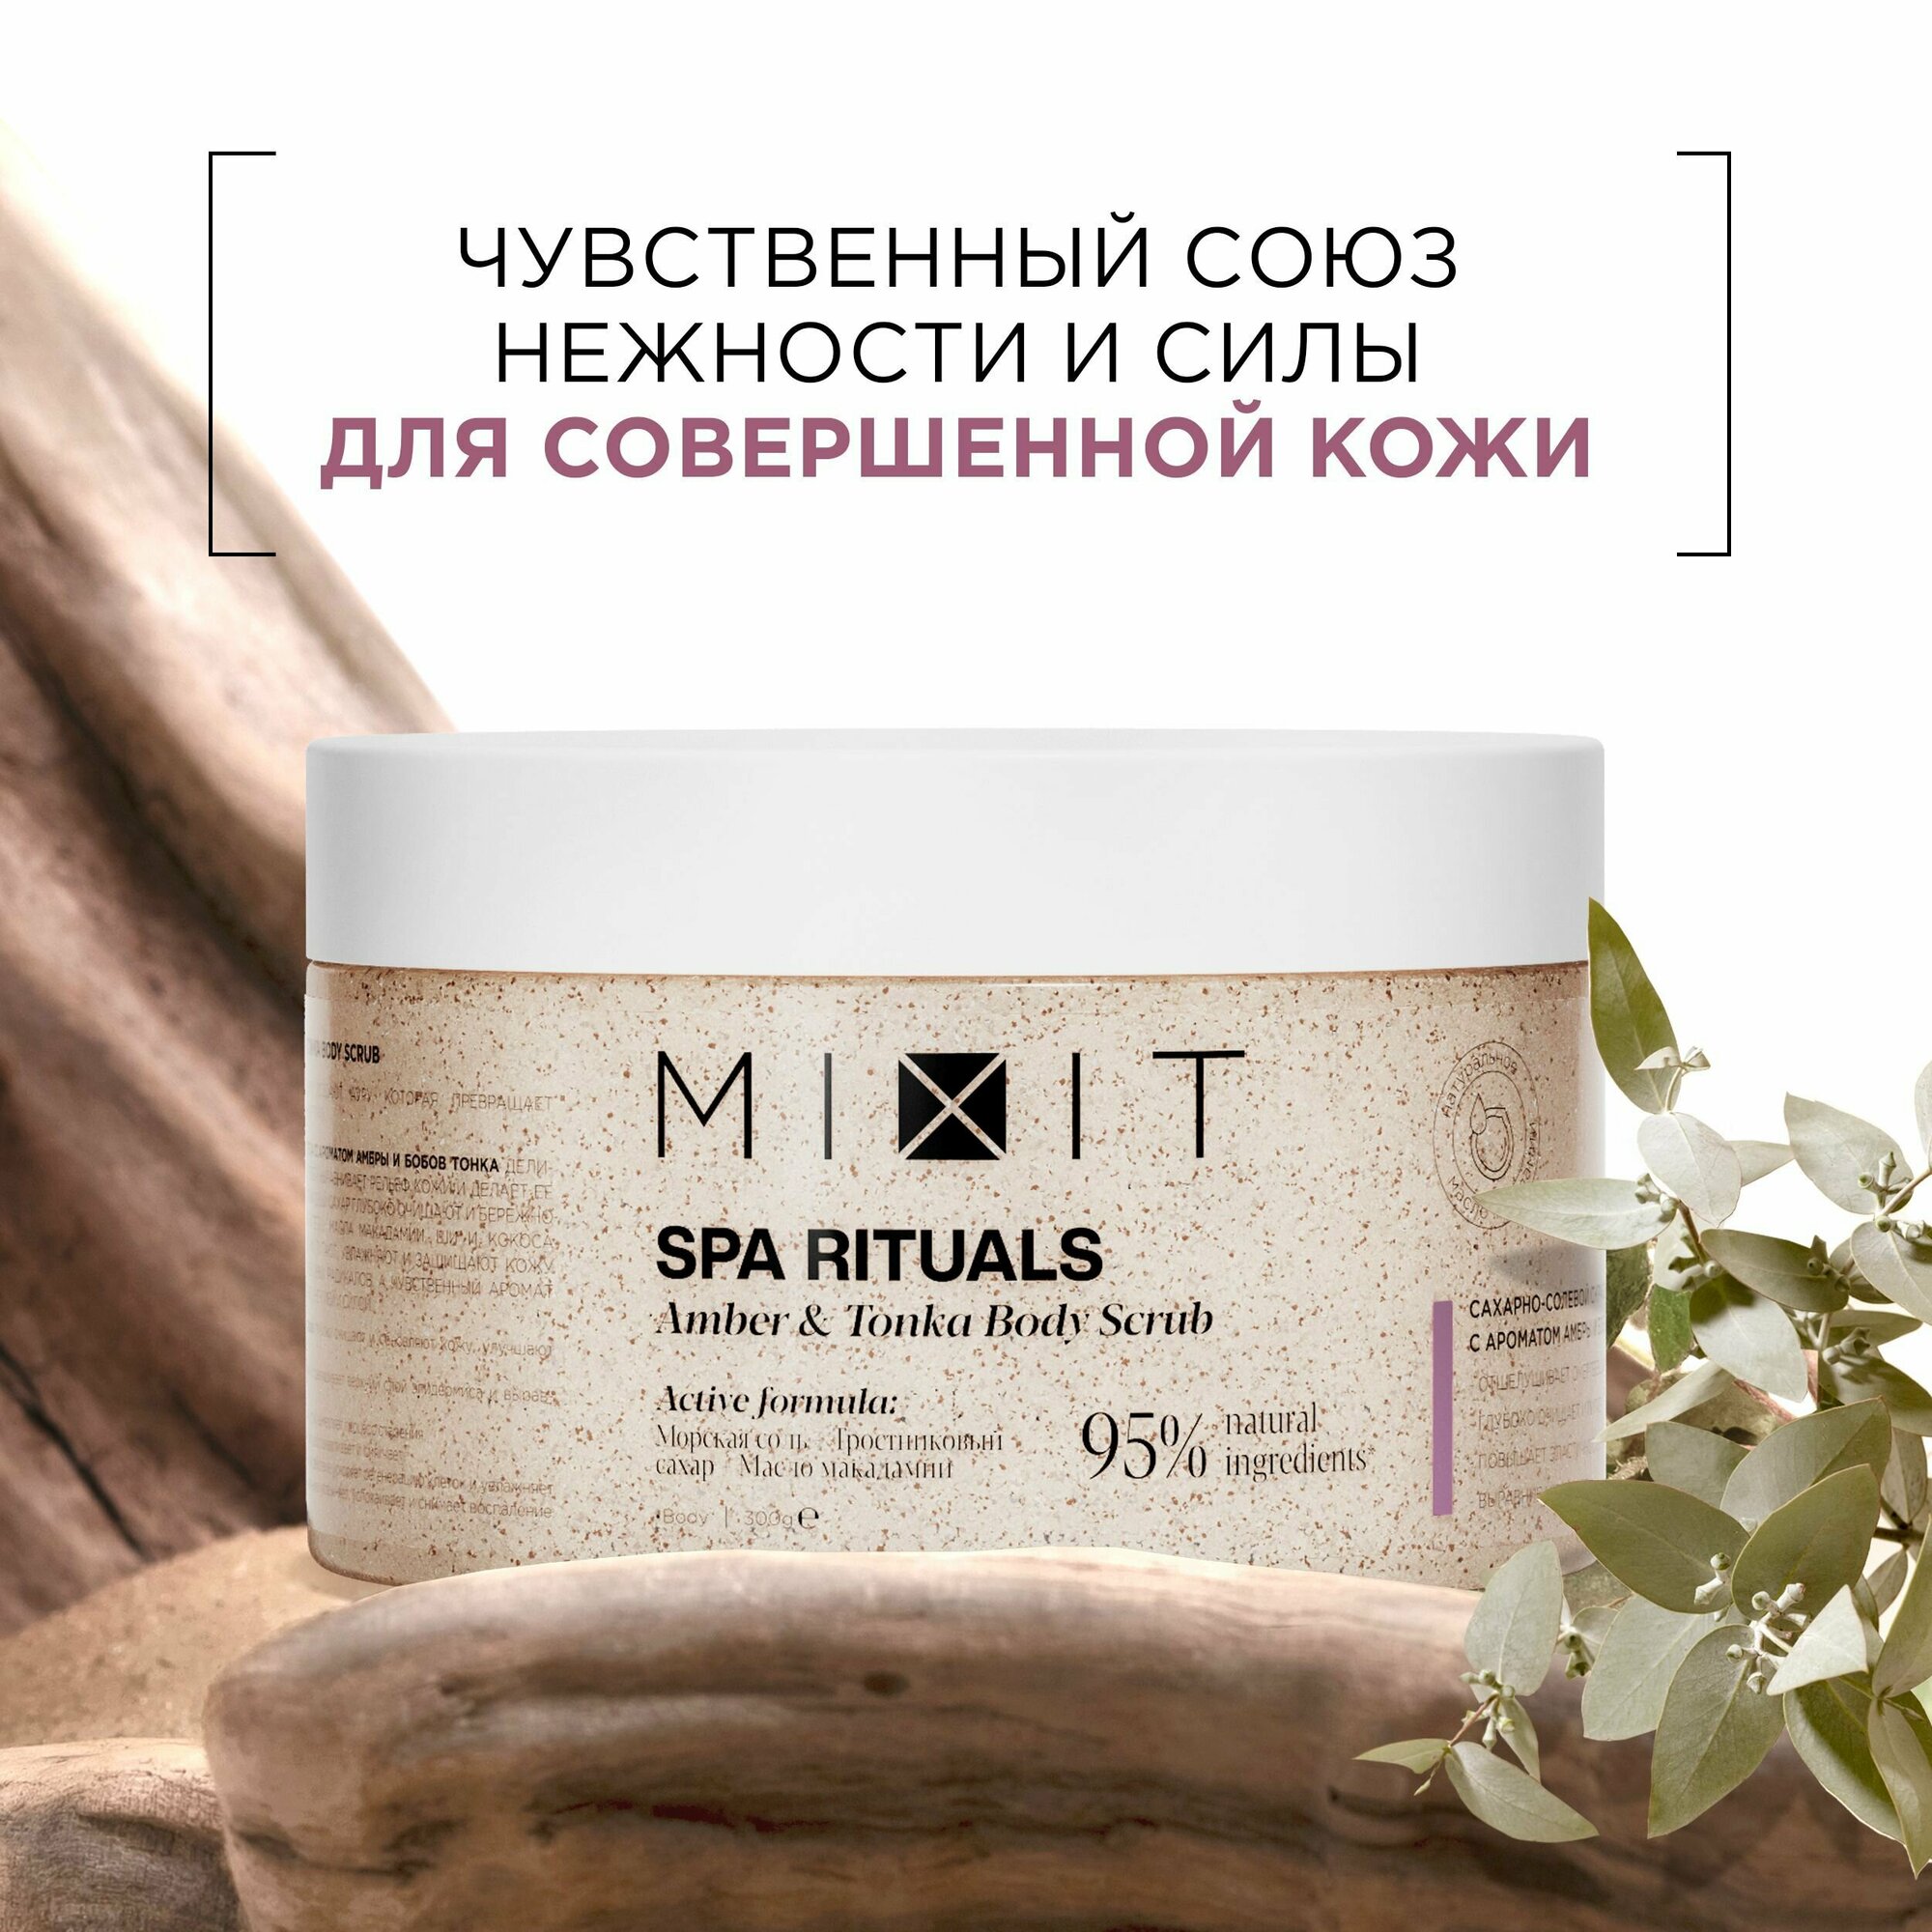 MIXIT Сахарно-солевой скраб для тела с маслами и натуральными экстрактами SPA RITUALS, 300 г